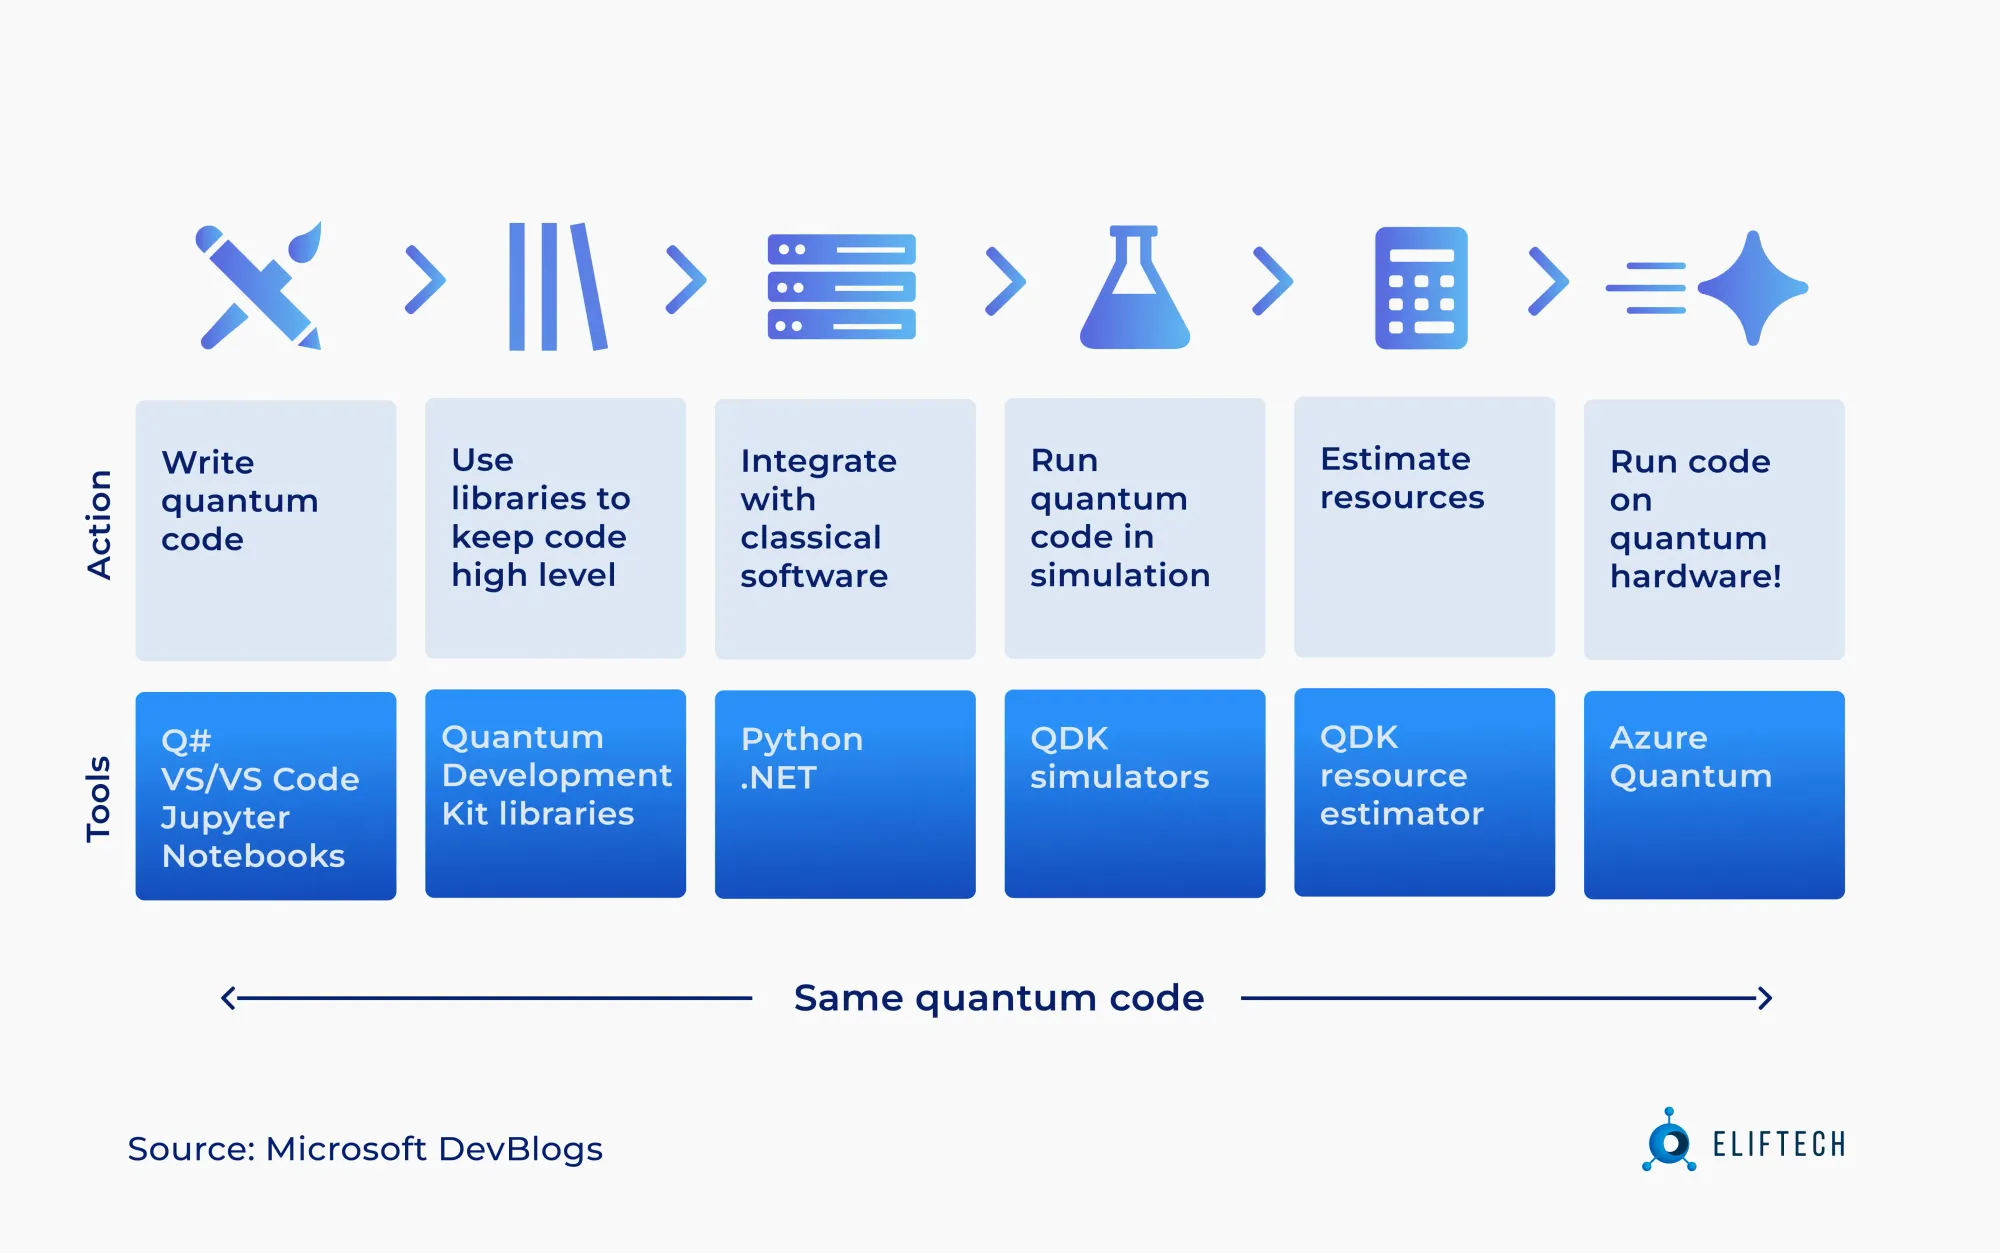 Stages of quantum app development